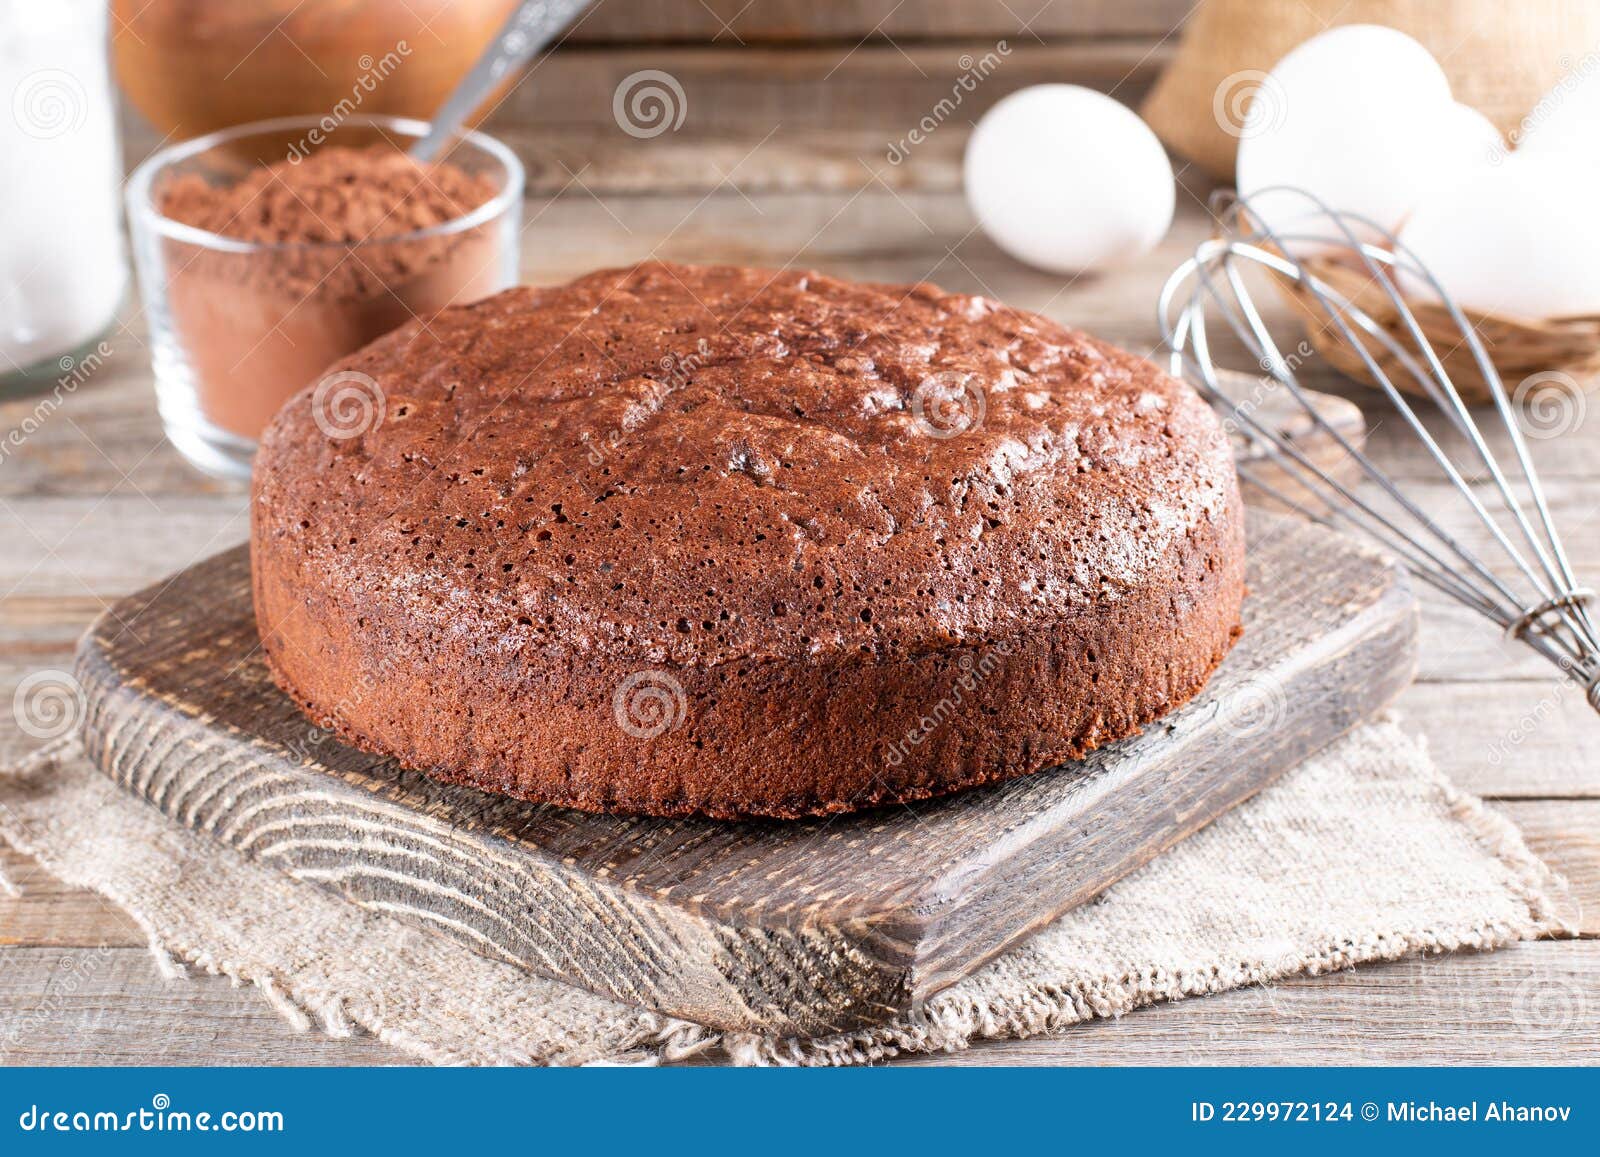 各自的巧克力海绵蛋糕 库存图片. 图片 包括有 蛋糕, 查出, 可口, 点心, 杯形蛋糕, 巧克力, 海绵 - 42207999